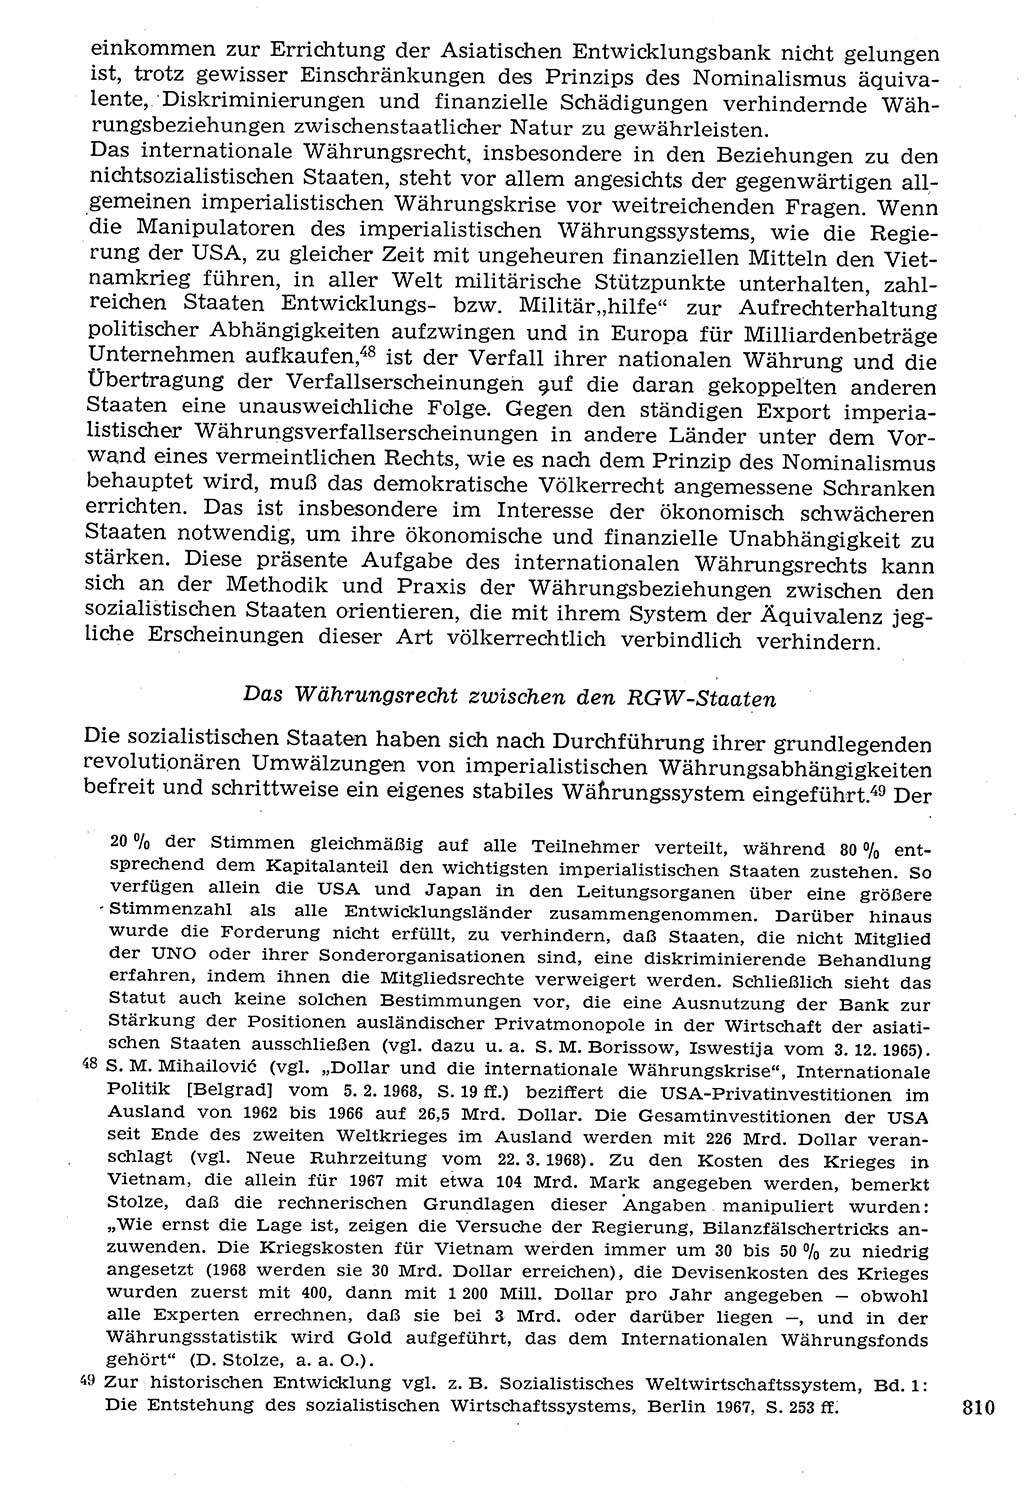 Staat und Recht (StuR), 17. Jahrgang [Deutsche Demokratische Republik (DDR)] 1968, Seite 810 (StuR DDR 1968, S. 810)